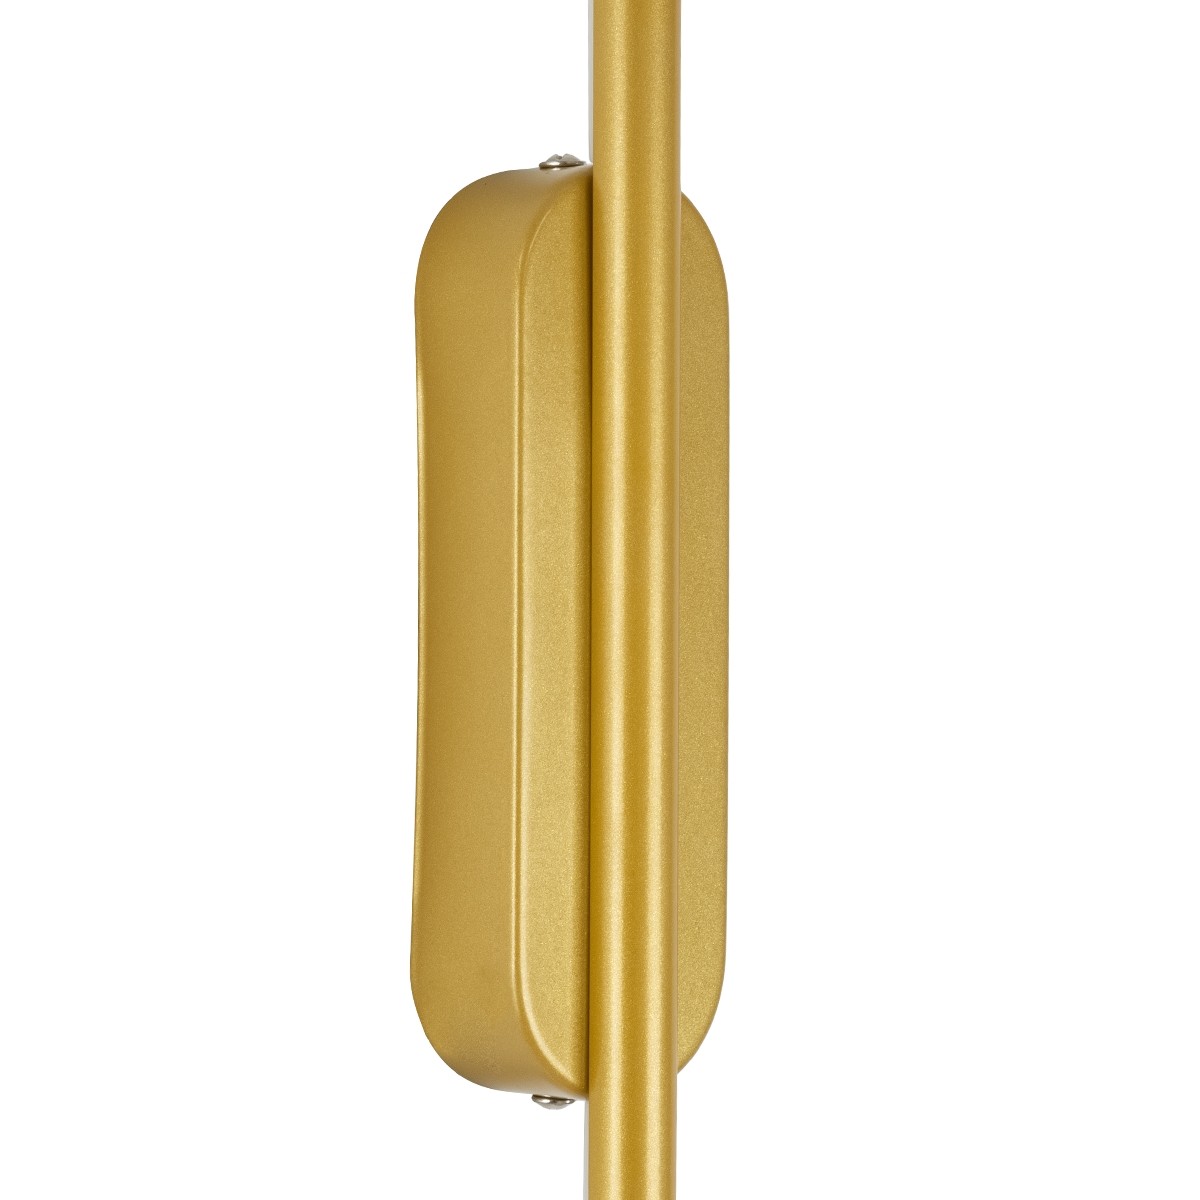 Led Γραμμικό Φωτιστικό Τοίχου - Απλίκα HARLEM 18Watt Χρυσό με Εναλλαγή Φωτισμού Μ5 x Π4 x Υ120cm 61336